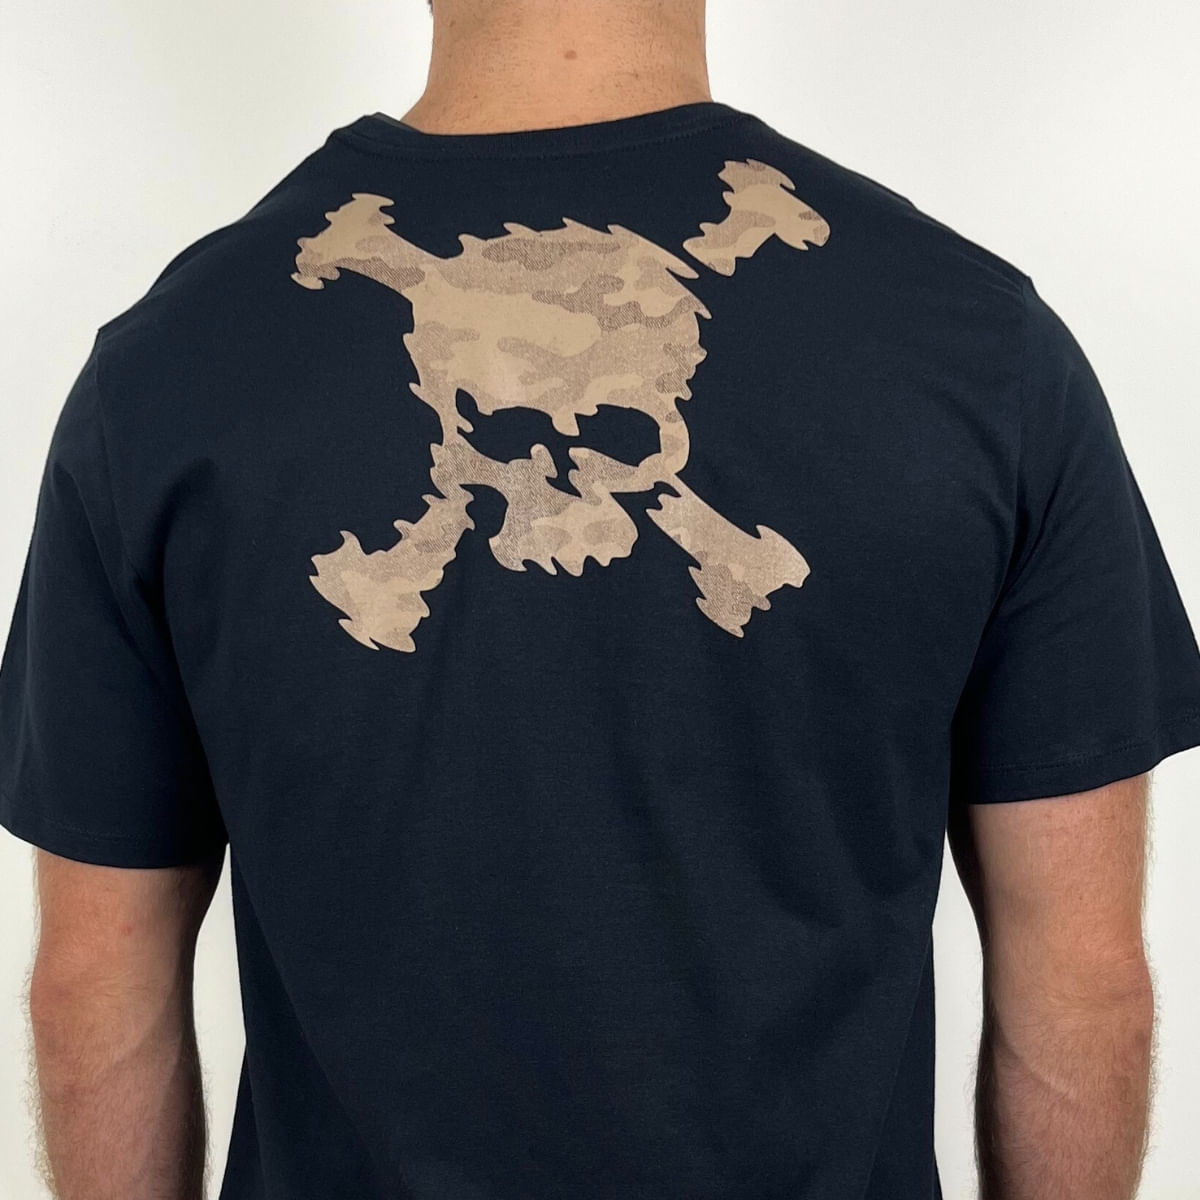 Camiseta Oakley Skull Bark Preta 